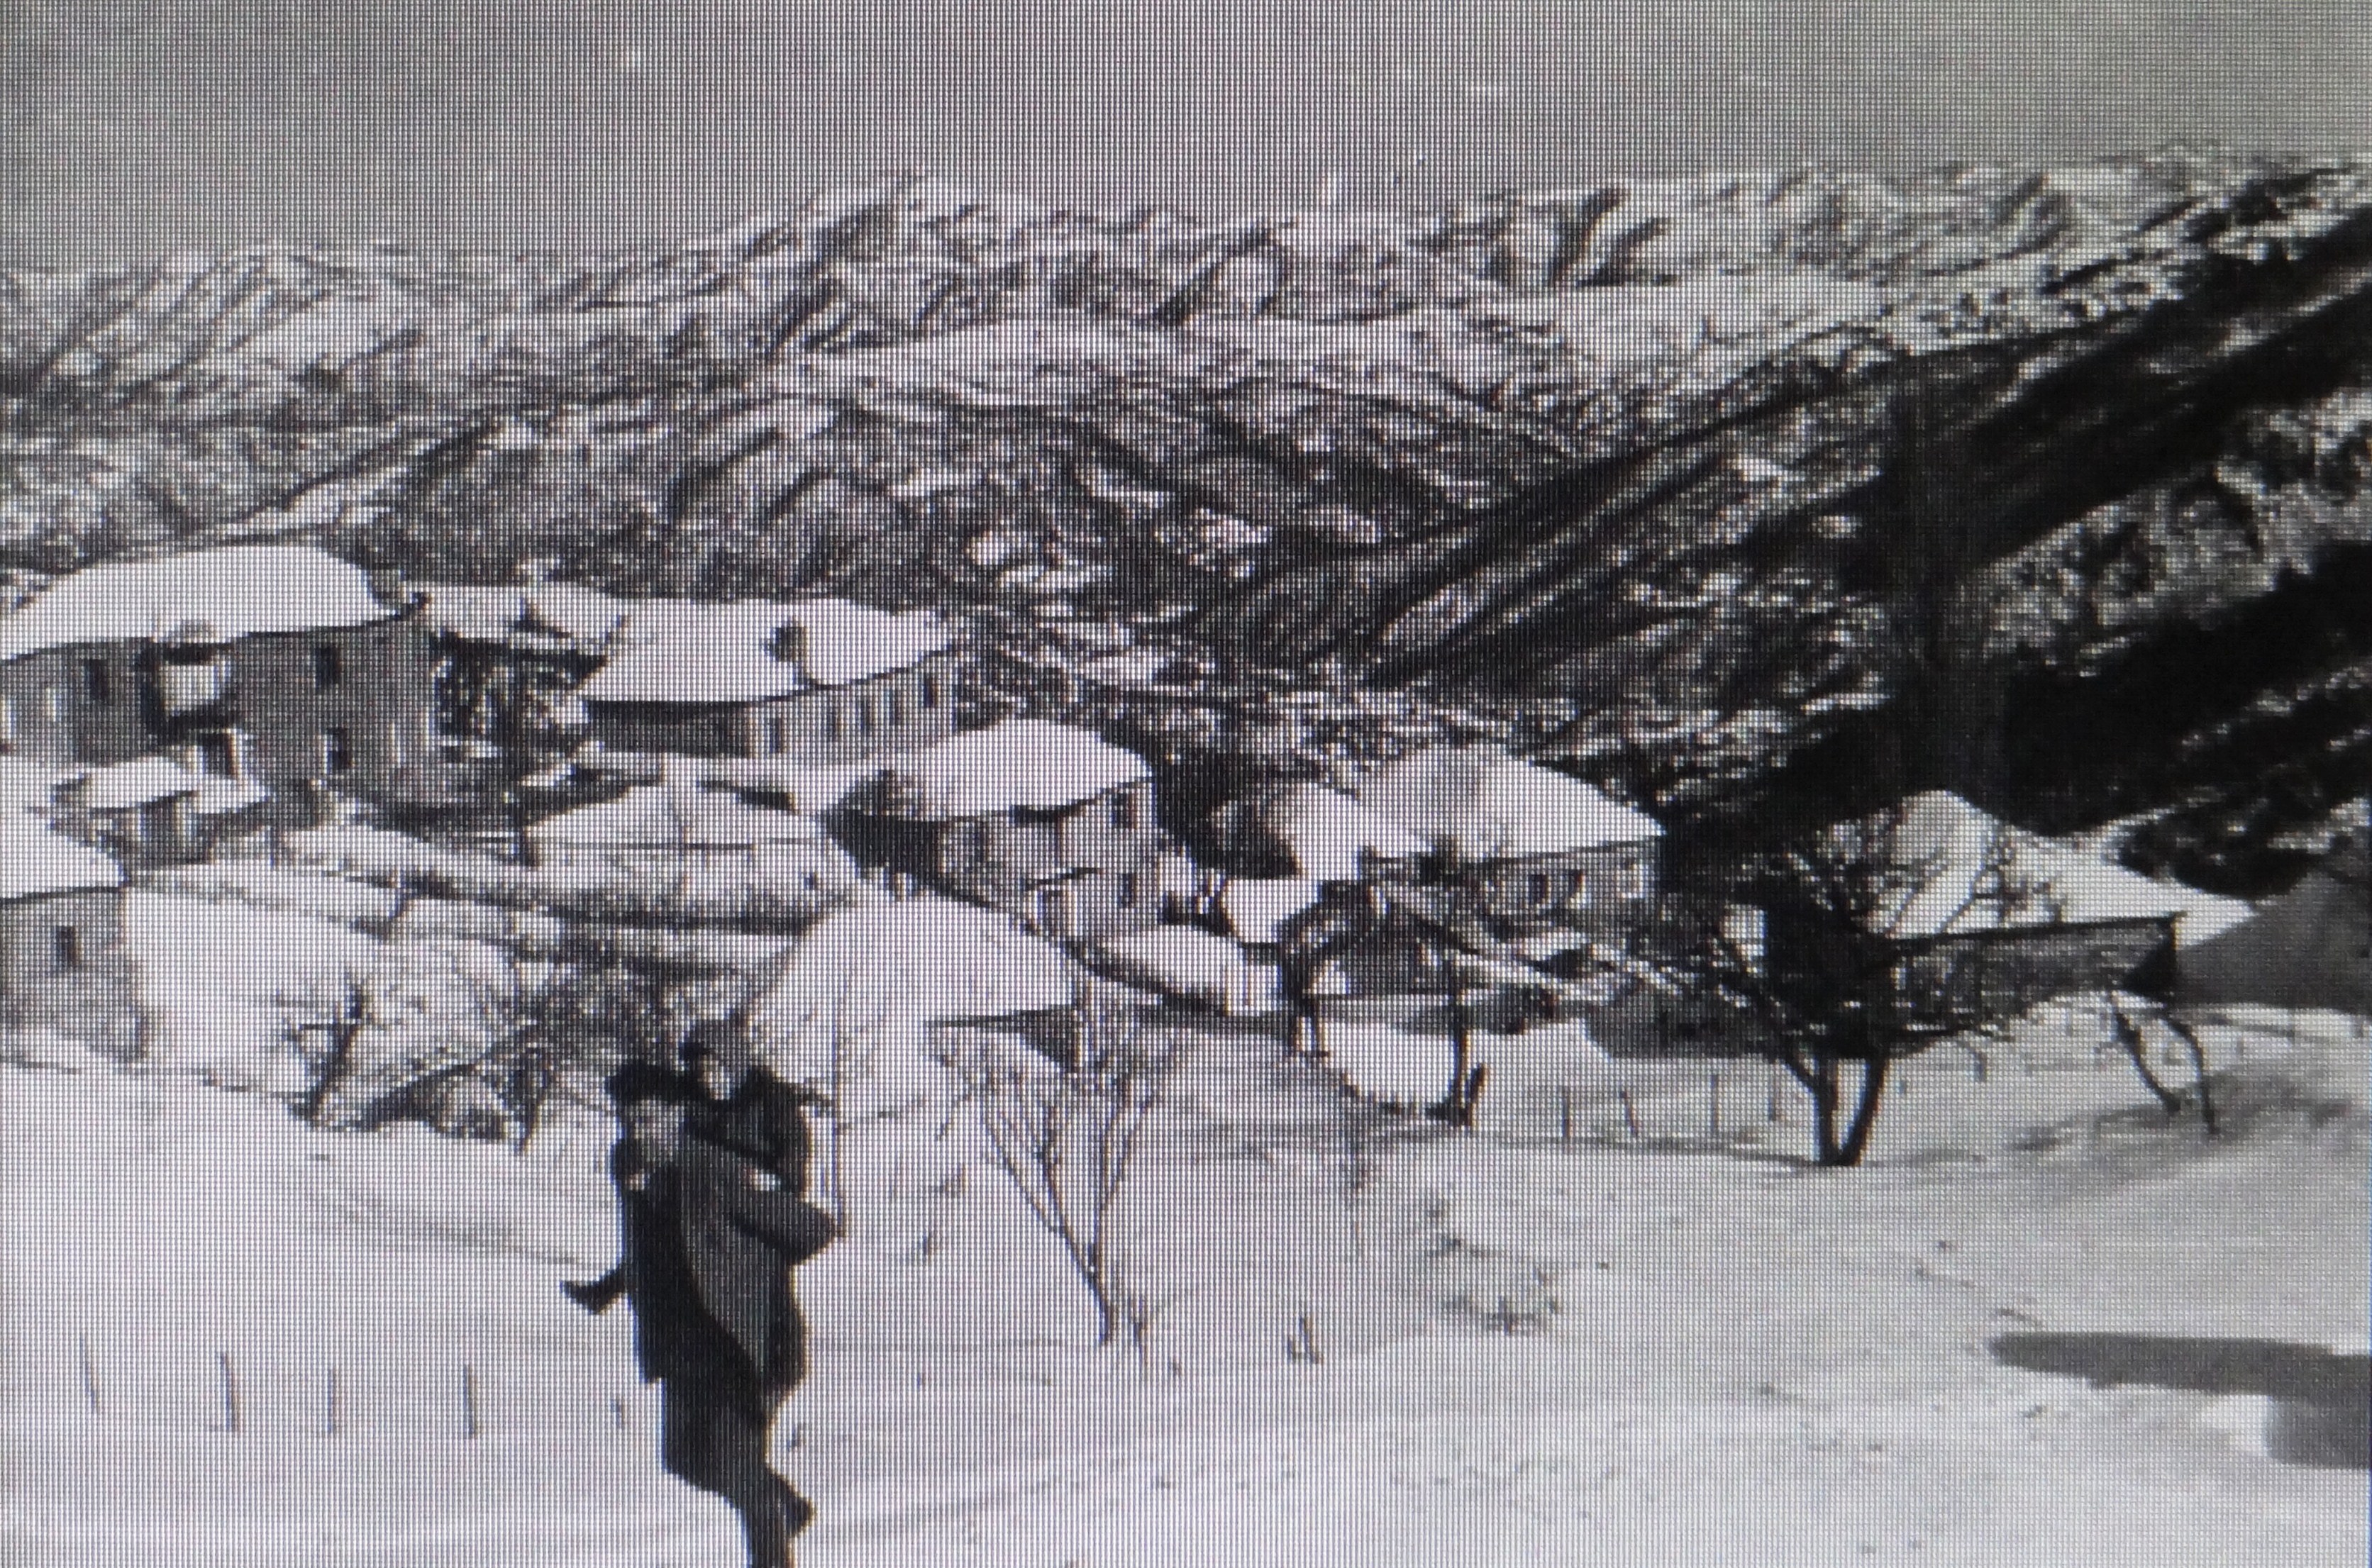 Fourka winter 1975